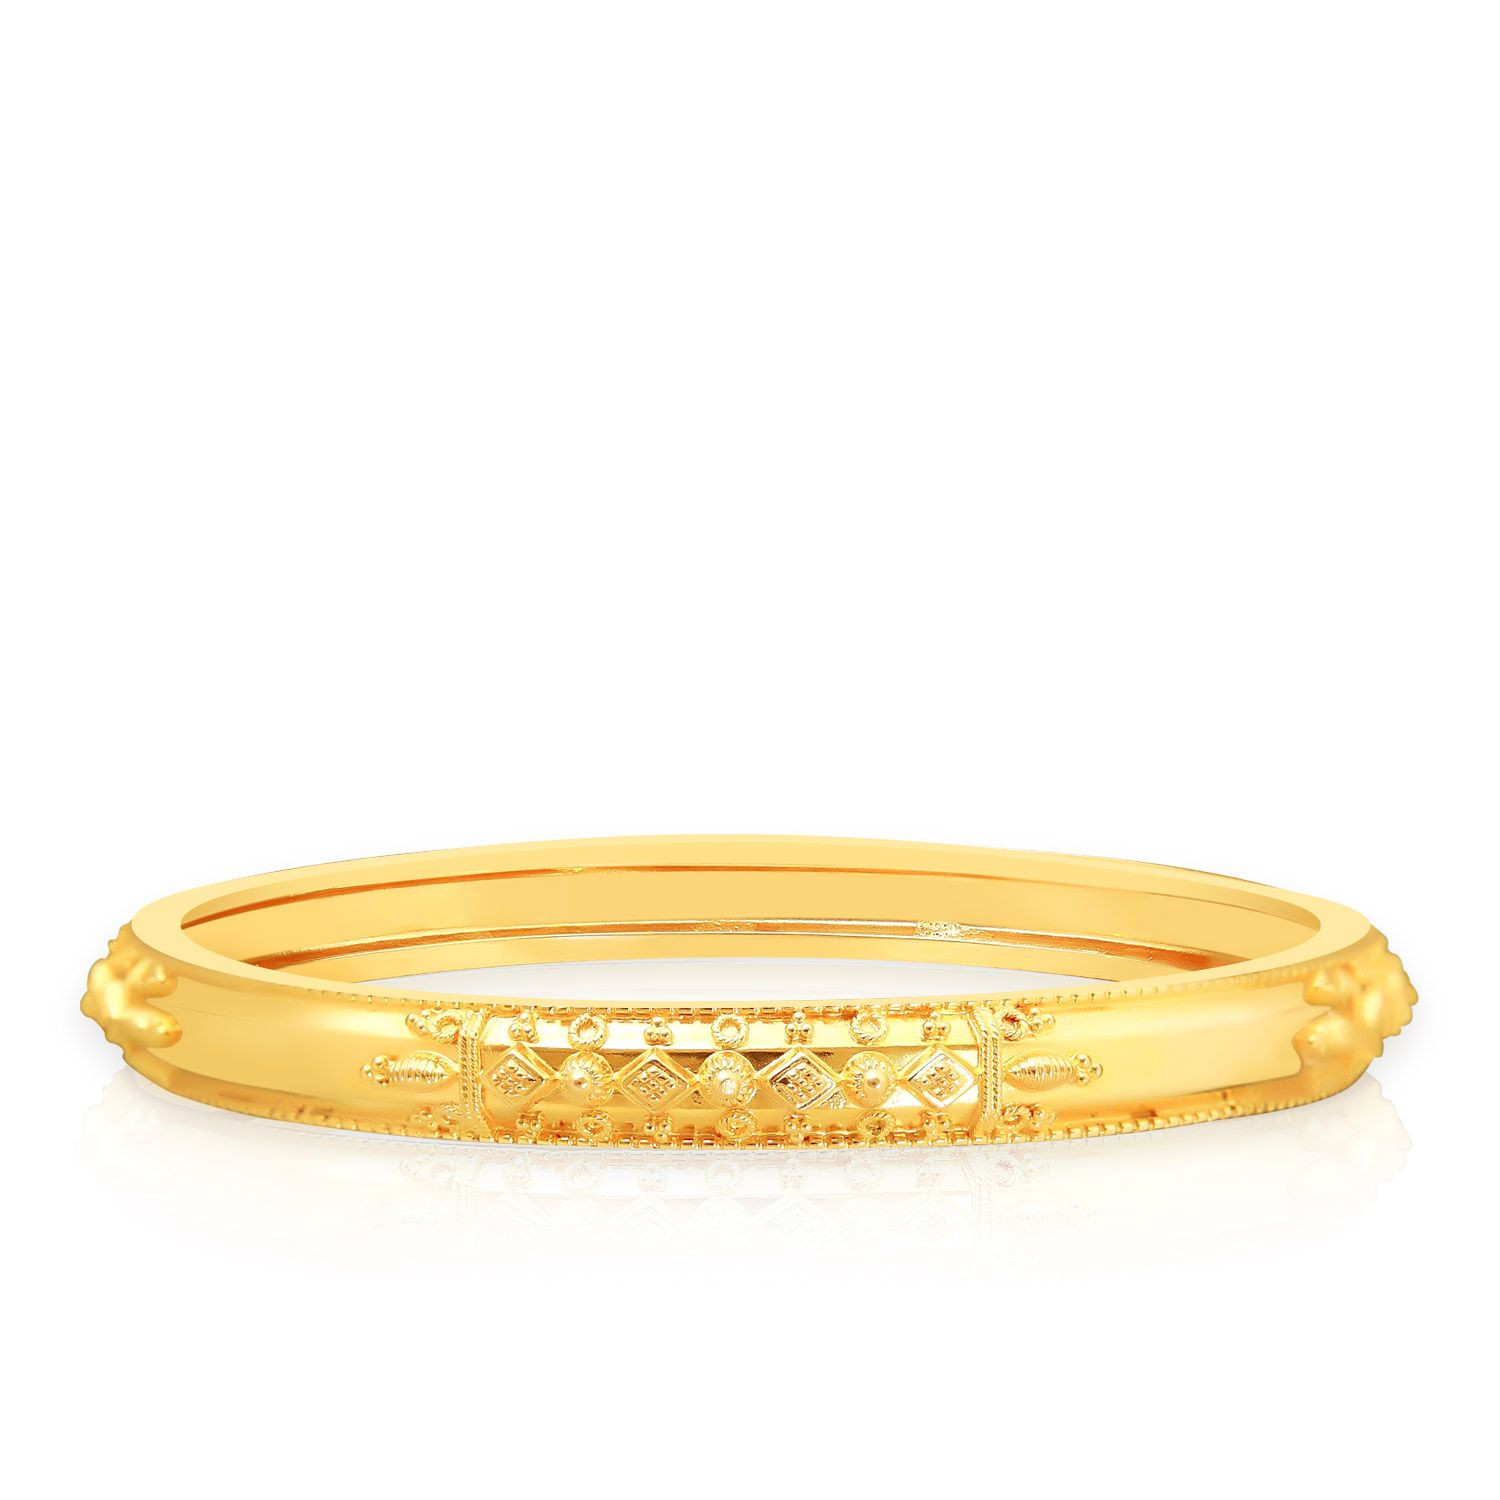 Wert 1030,- Gold Ring 585 / 14 KT Gelbgold Farbsteine bunt floral breit  Amethyst | eBay